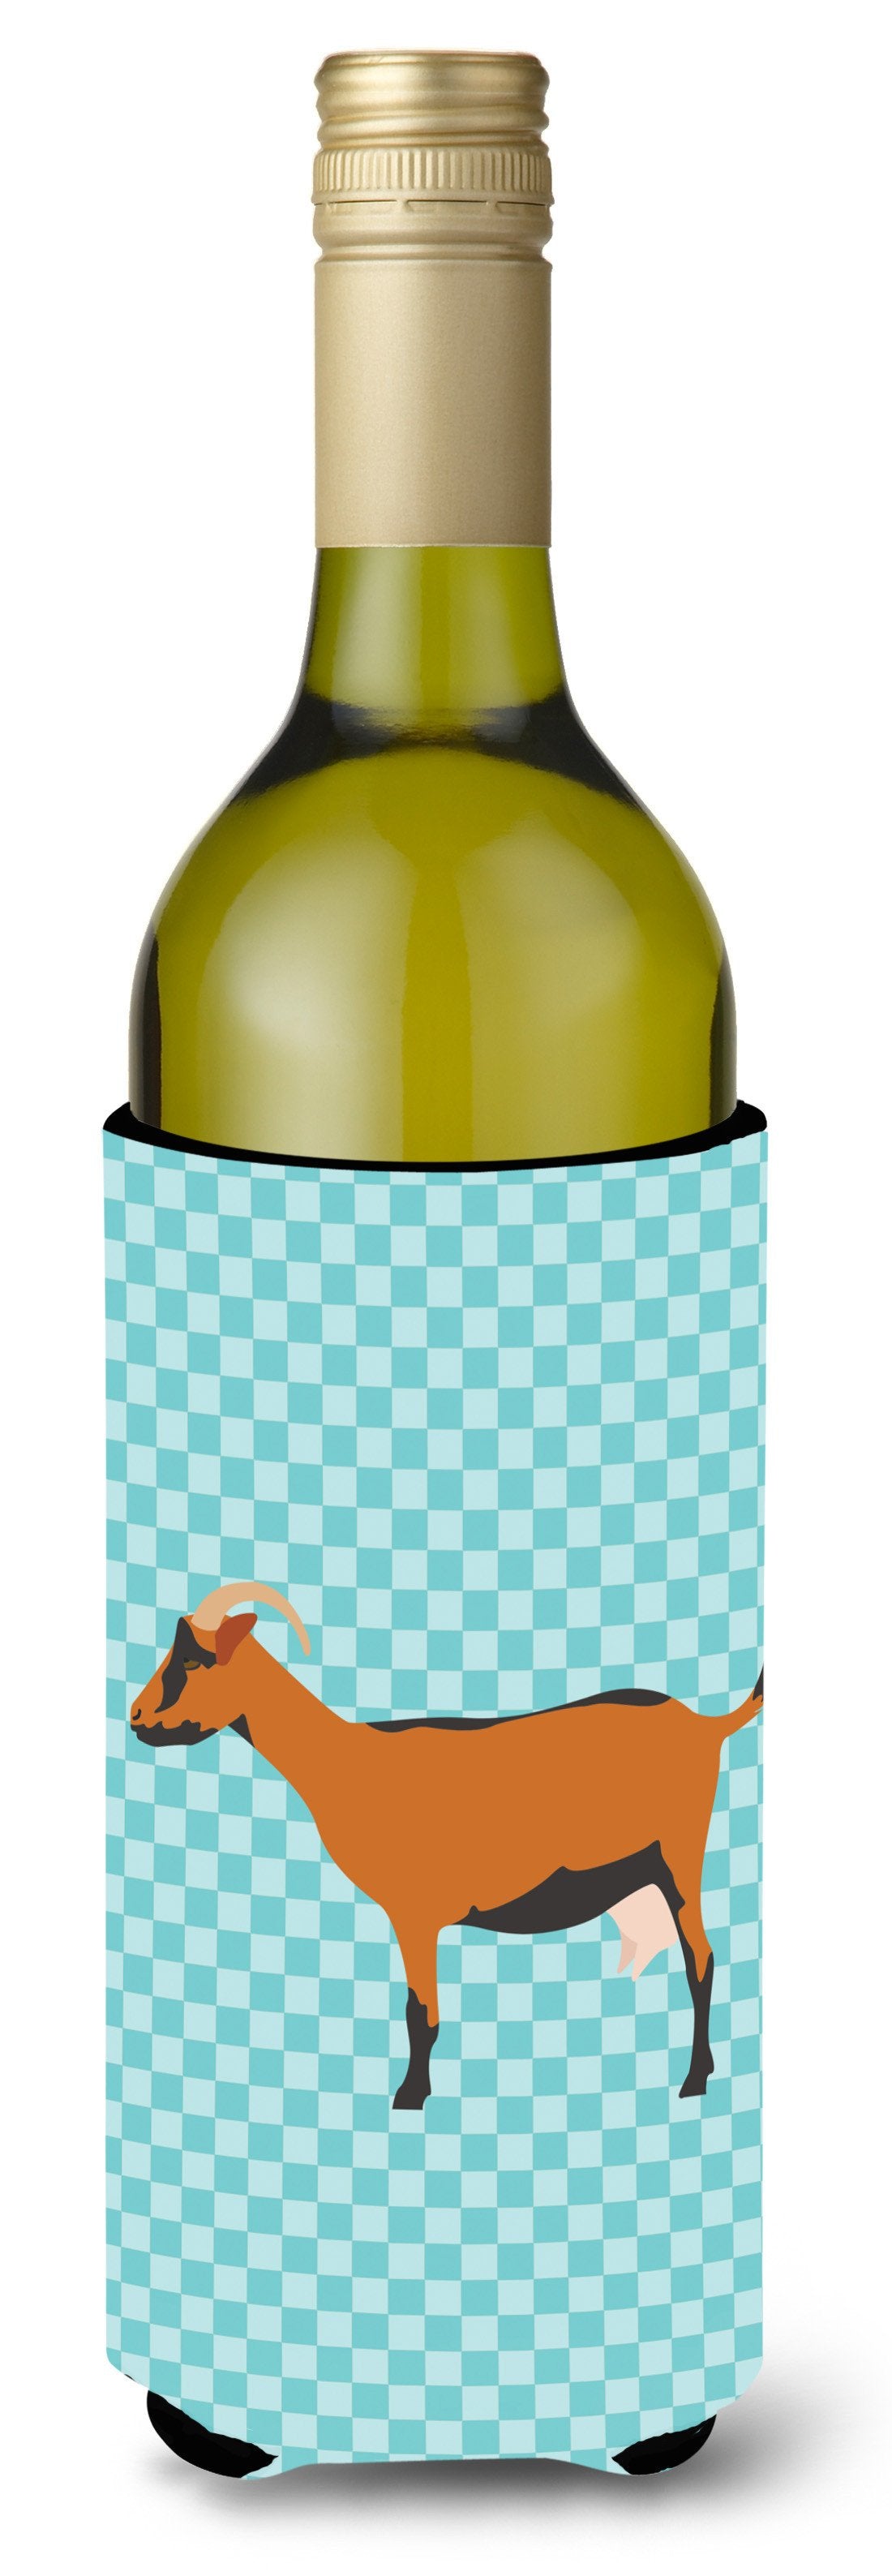 Oberhasli Goat Blue Check Wine Bottle Beverge Insulator Hugger BB8062LITERK by Caroline's Treasures